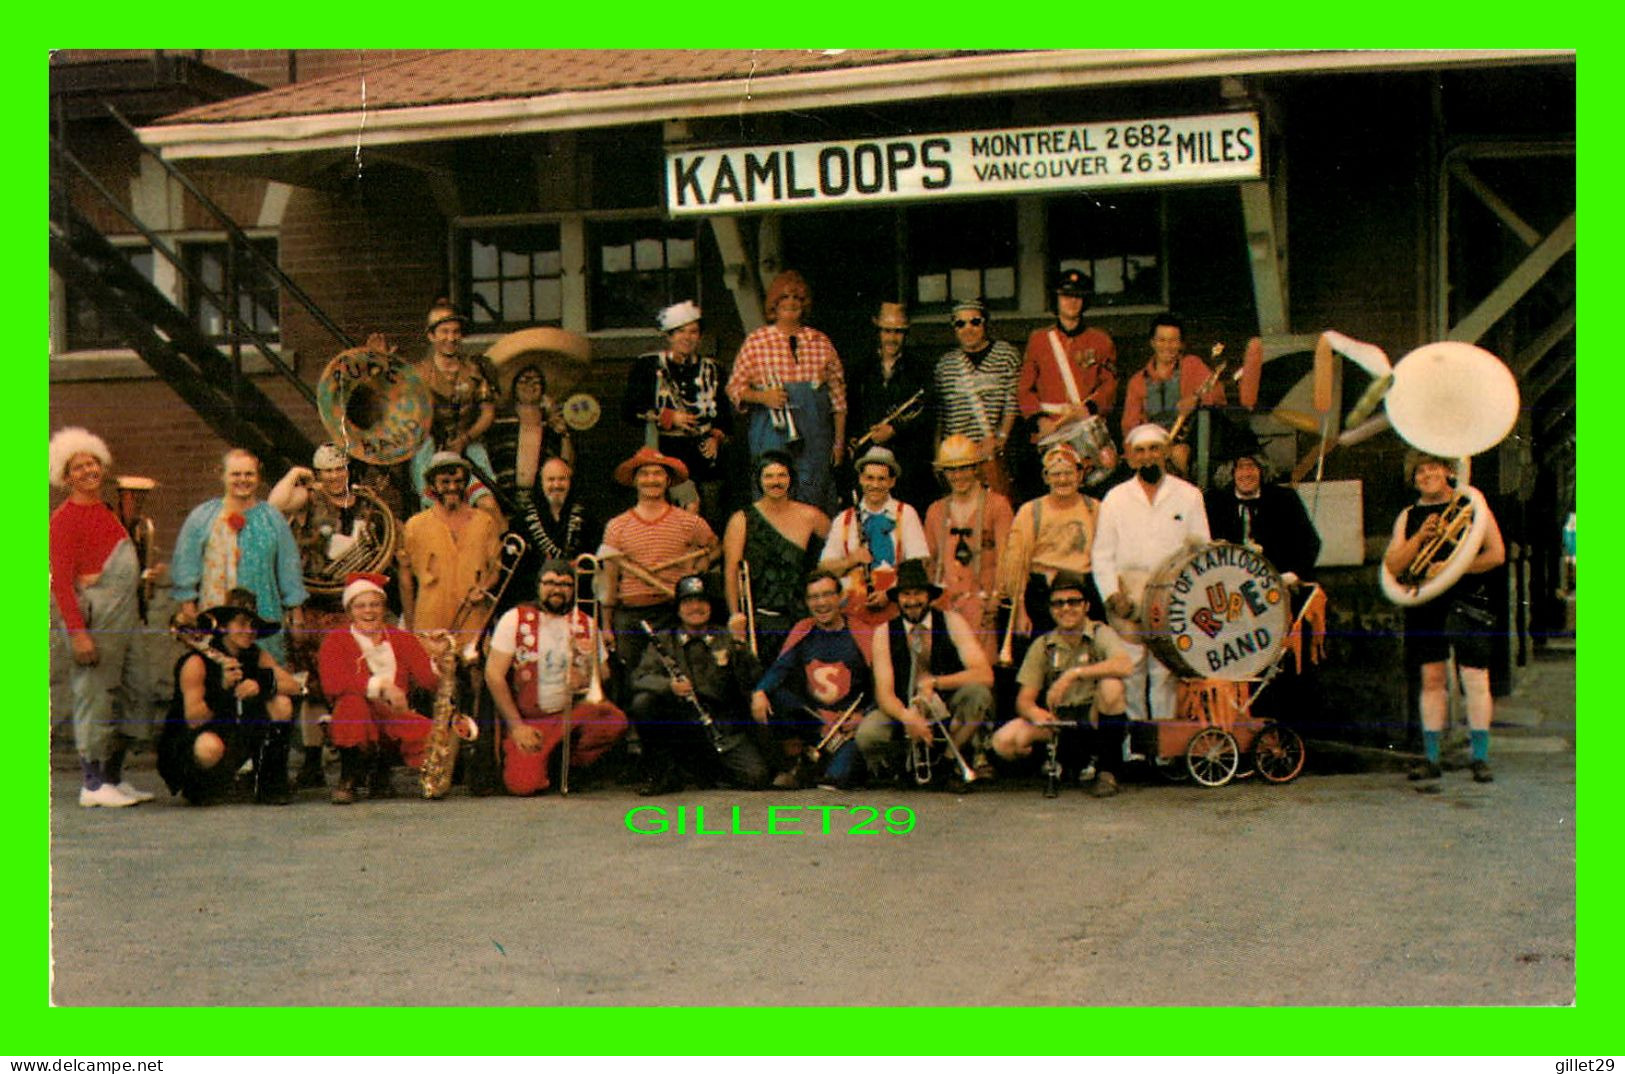 KAMLOOPS, BC - THE CITY OF KAMLOOPS RUBE BAND - PHOTO, FRED T. BILLOWS - - Kamloops